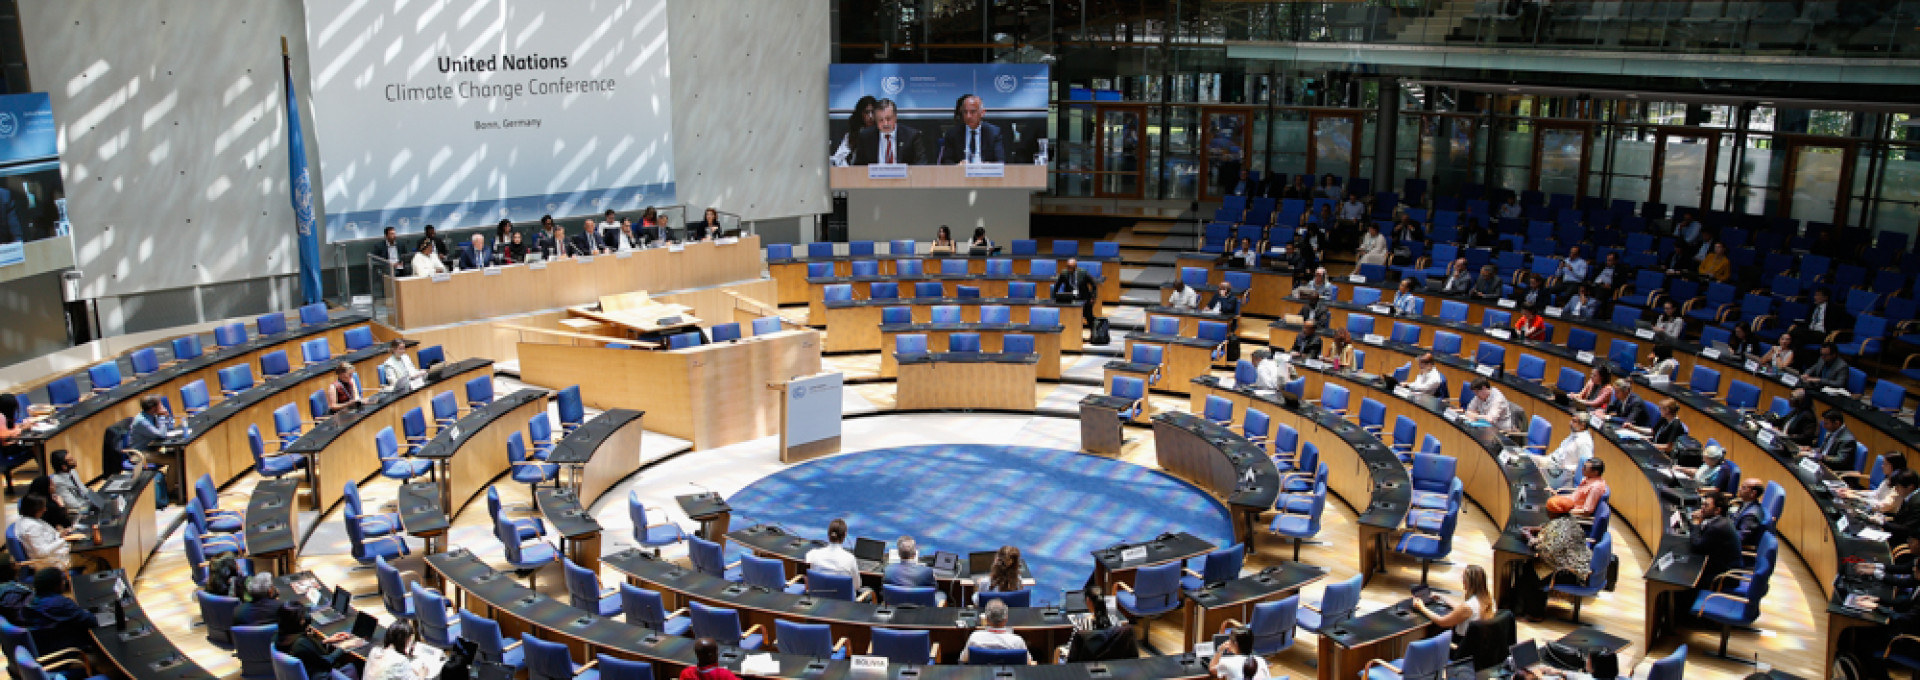 Delegierte bei der Klimakonferenz in Bonn